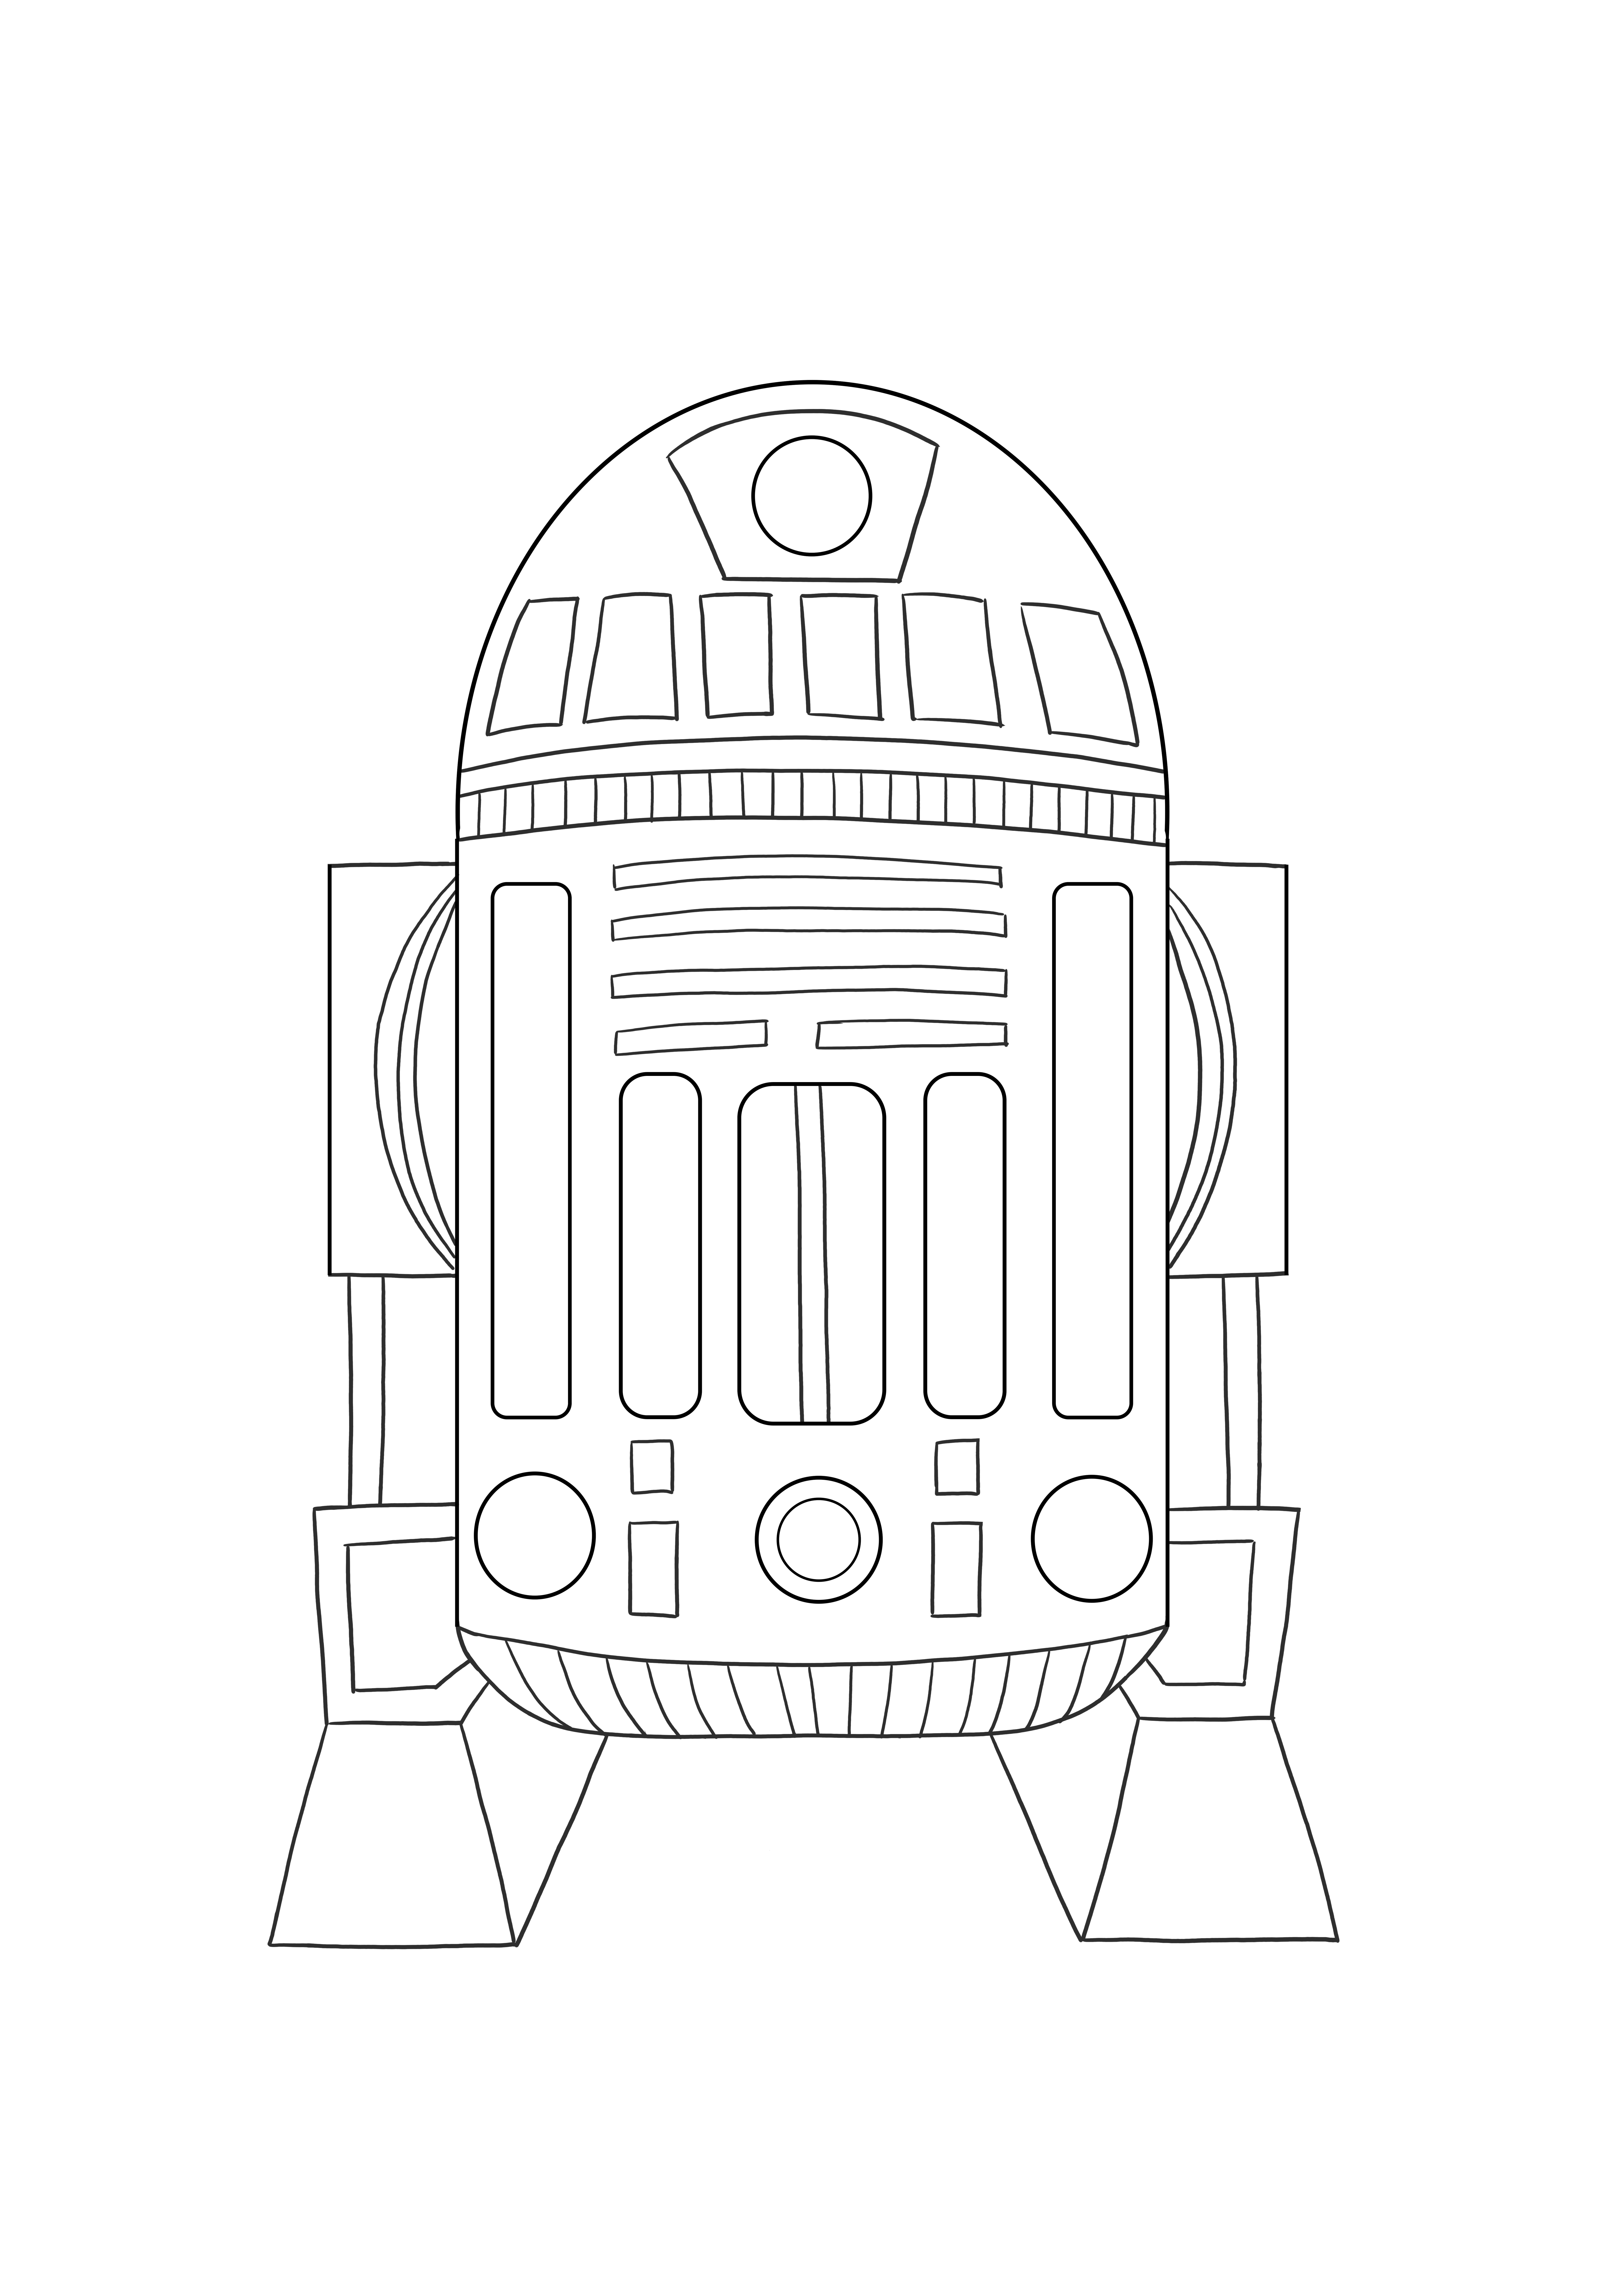 Astromed Droid R2 kostenloses druckbares Bild zum Ausmalen für Kinder